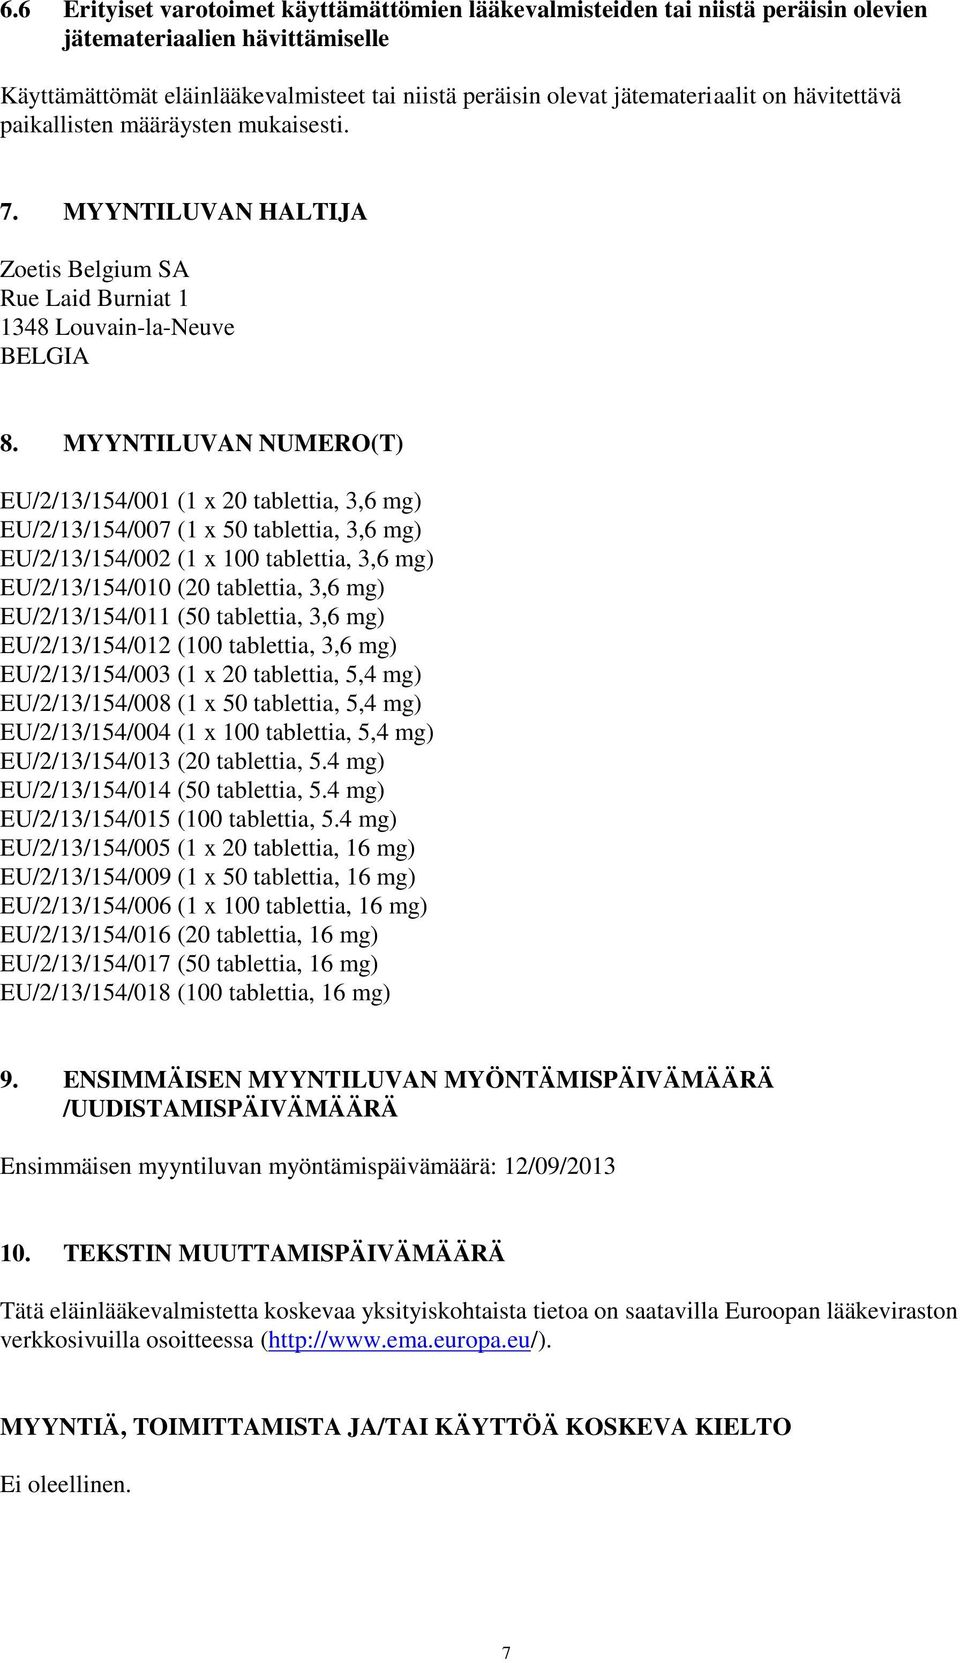 MYYNTILUVAN NUMERO(T) EU/2/13/154/001 (1 x 20 tablettia, 3,6 mg) EU/2/13/154/007 (1 x 50 tablettia, 3,6 mg) EU/2/13/154/002 (1 x 100 tablettia, 3,6 mg) EU/2/13/154/010 (20 tablettia, 3,6 mg)